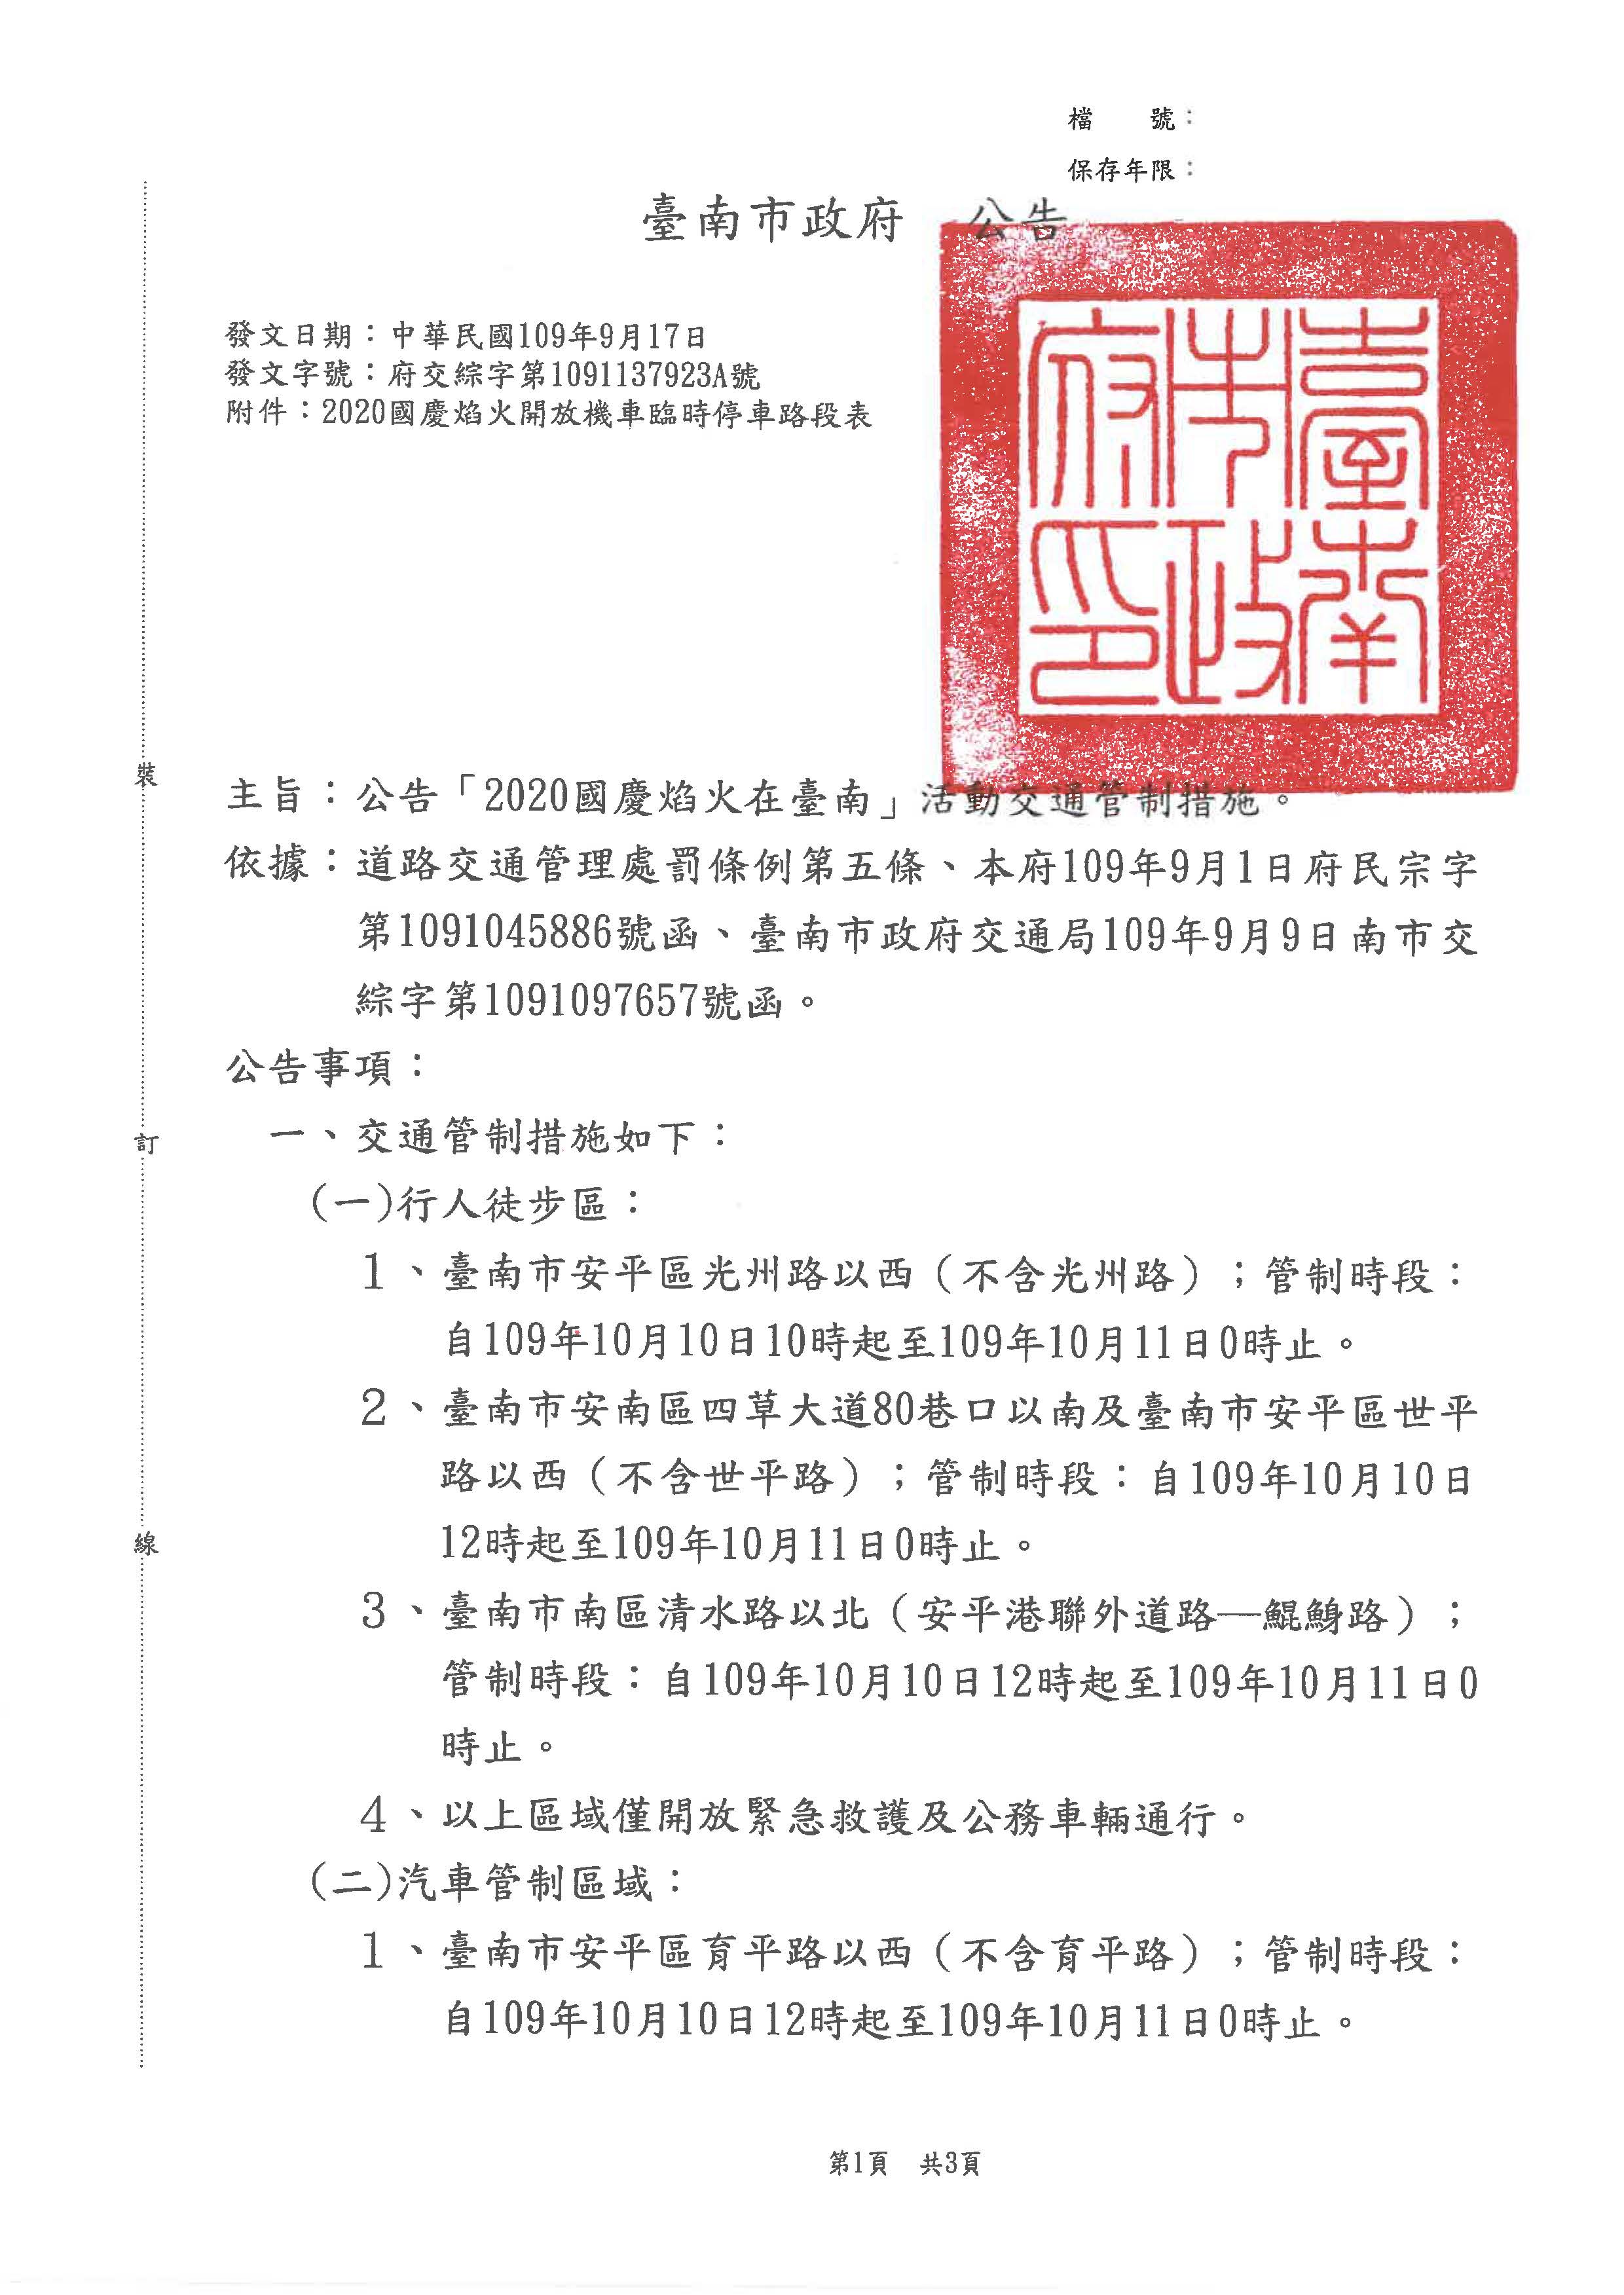 公告「2020國慶焰火在臺南」活動交通管制頁面1